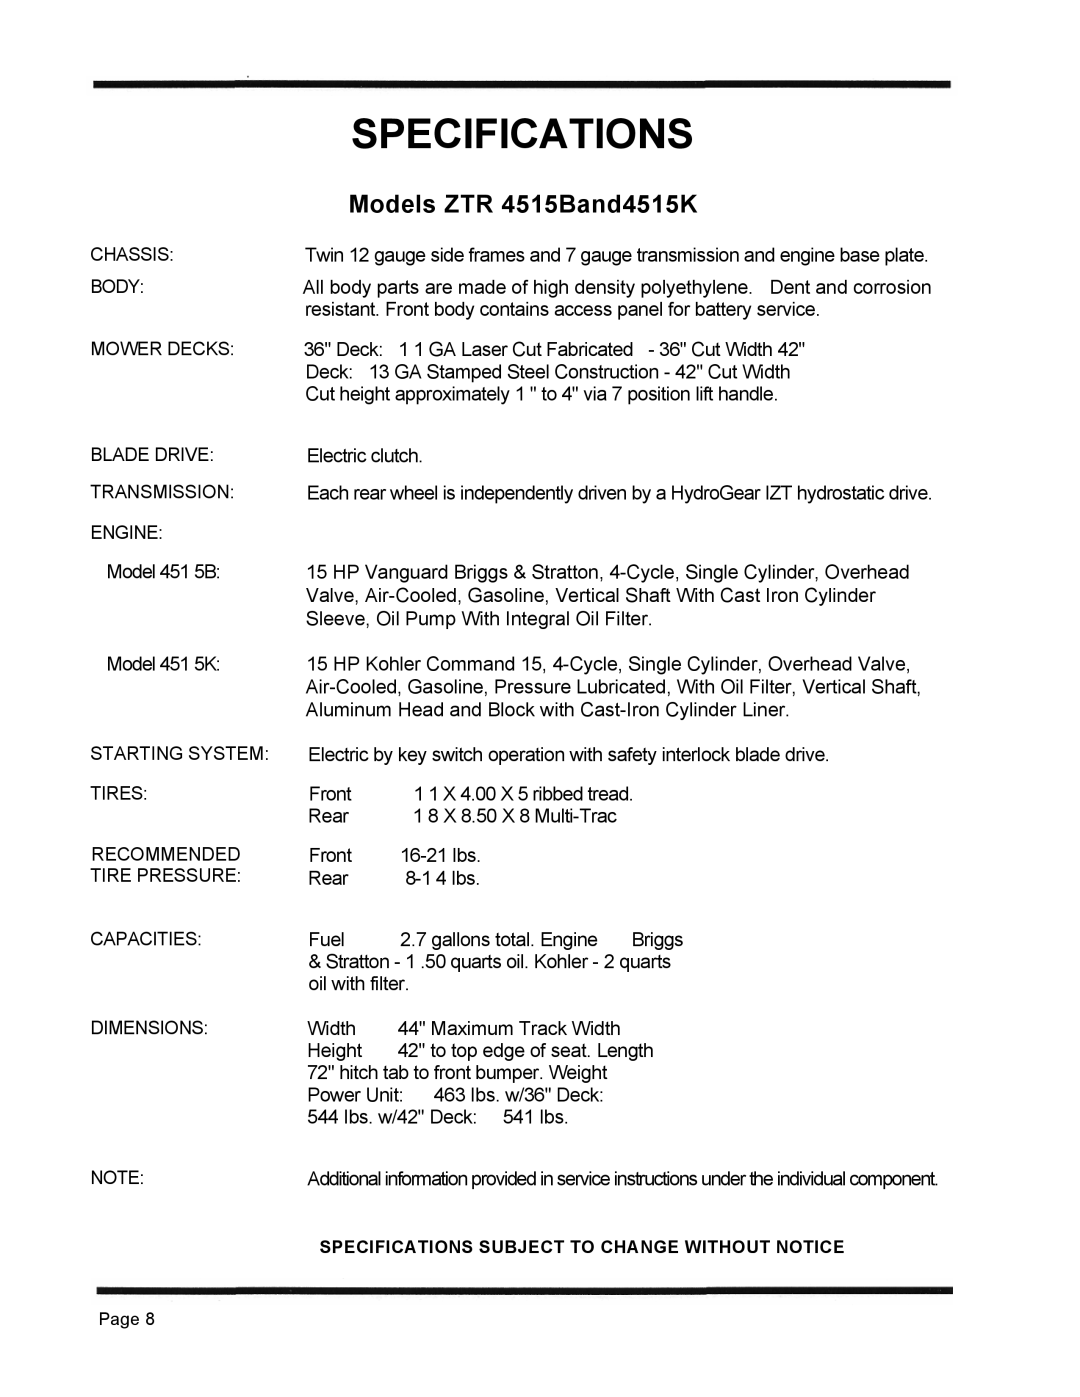 Dixon 1998, ZTR 4515K manual Specifications, Models ZTR 4515Band4515K 